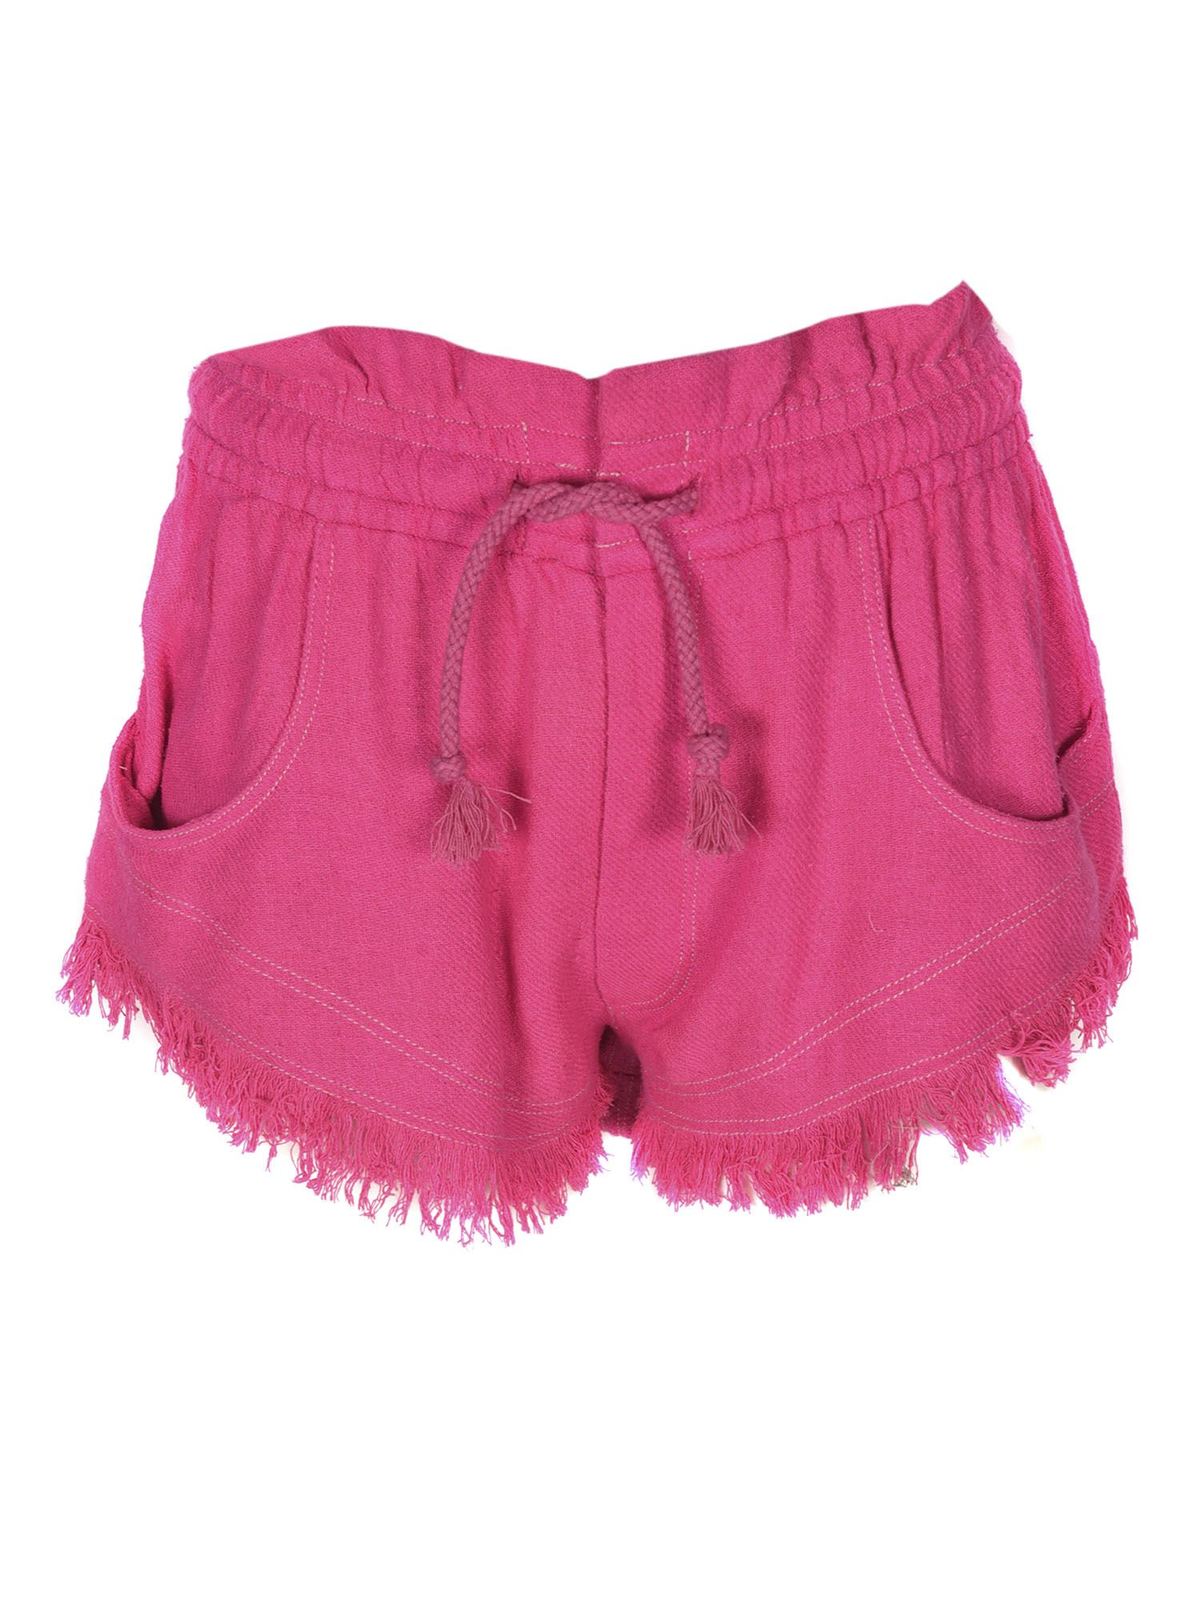 Isabel marant etoile - Talapiz shorts in Neon Pink - shorts ...